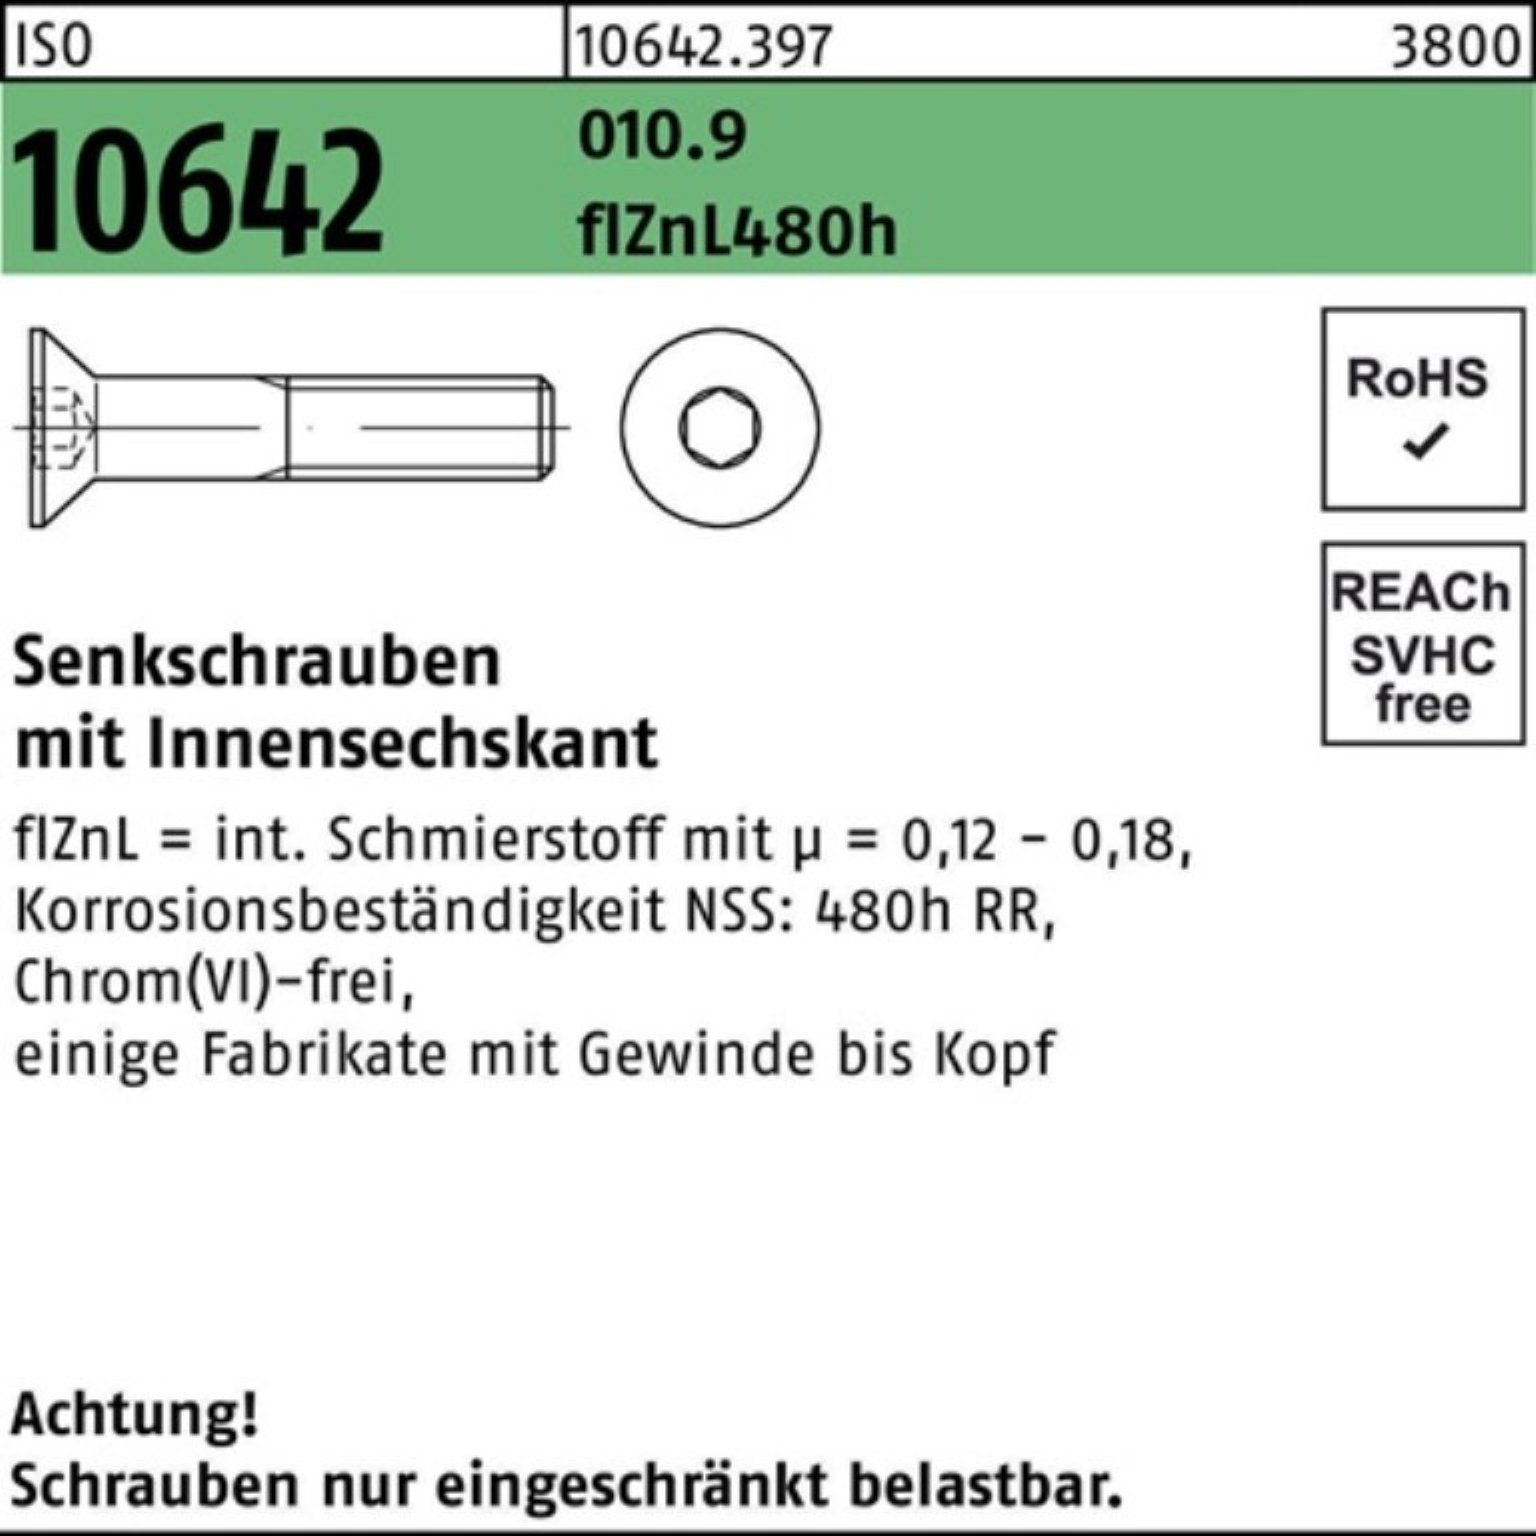 Reyher Senkschraube 200er Pack Senkschraube ISO 10642 Innen-6kt M10x20 010.9 flZnL 480h zi